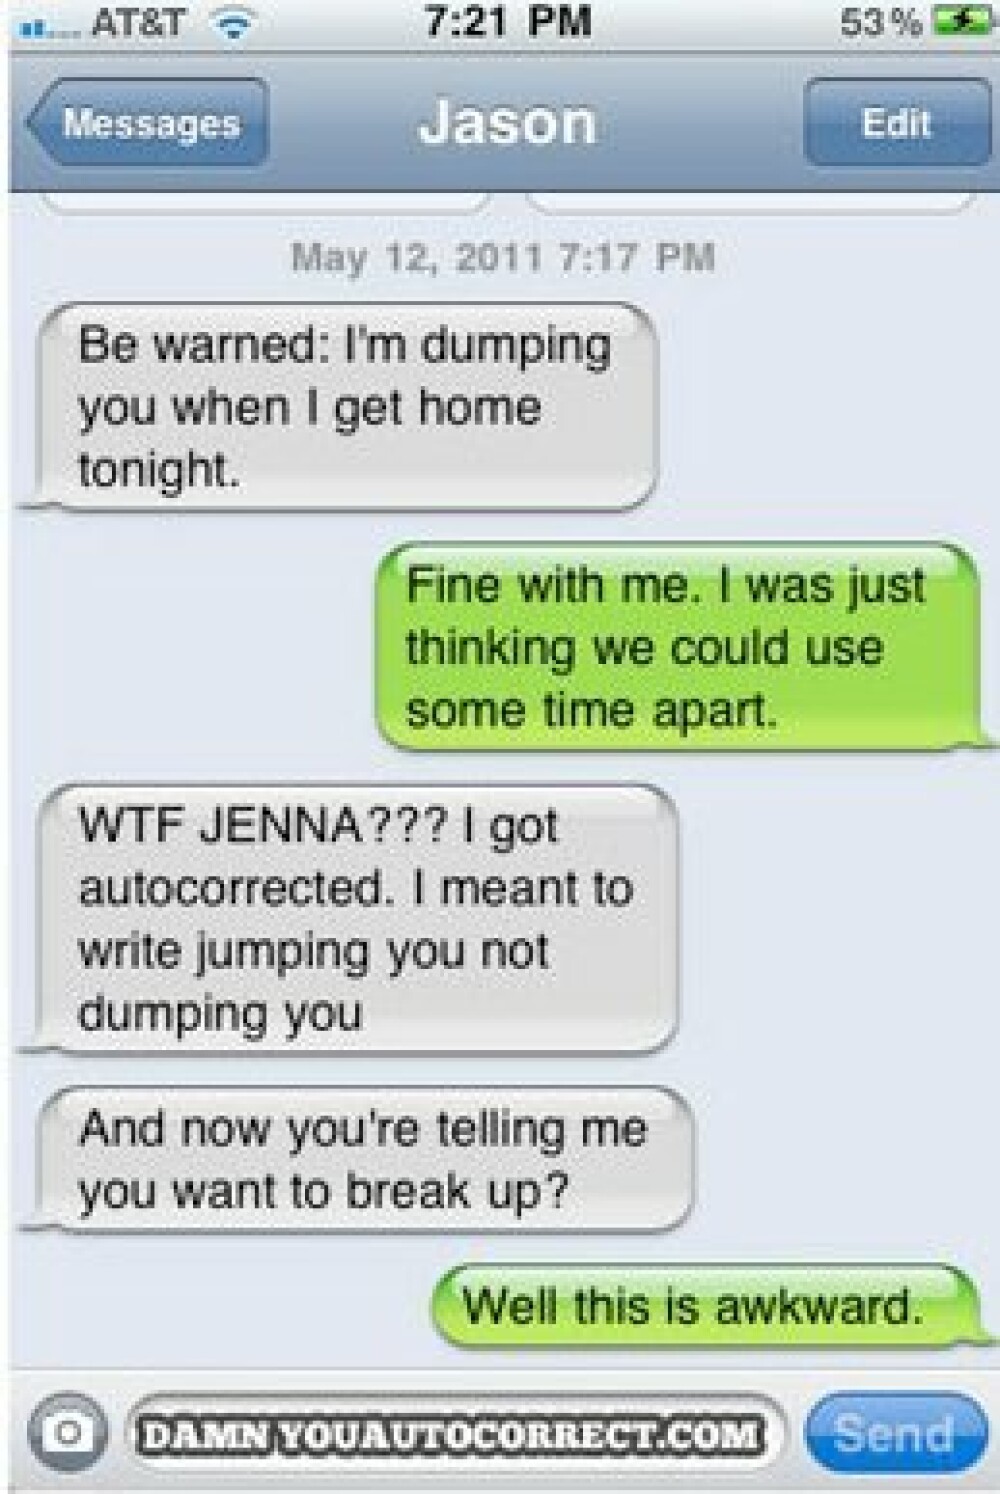 Cele mai nefericite erori de scriere dintr-un SMS de care ar trebui sa va feriti - Imaginea 7